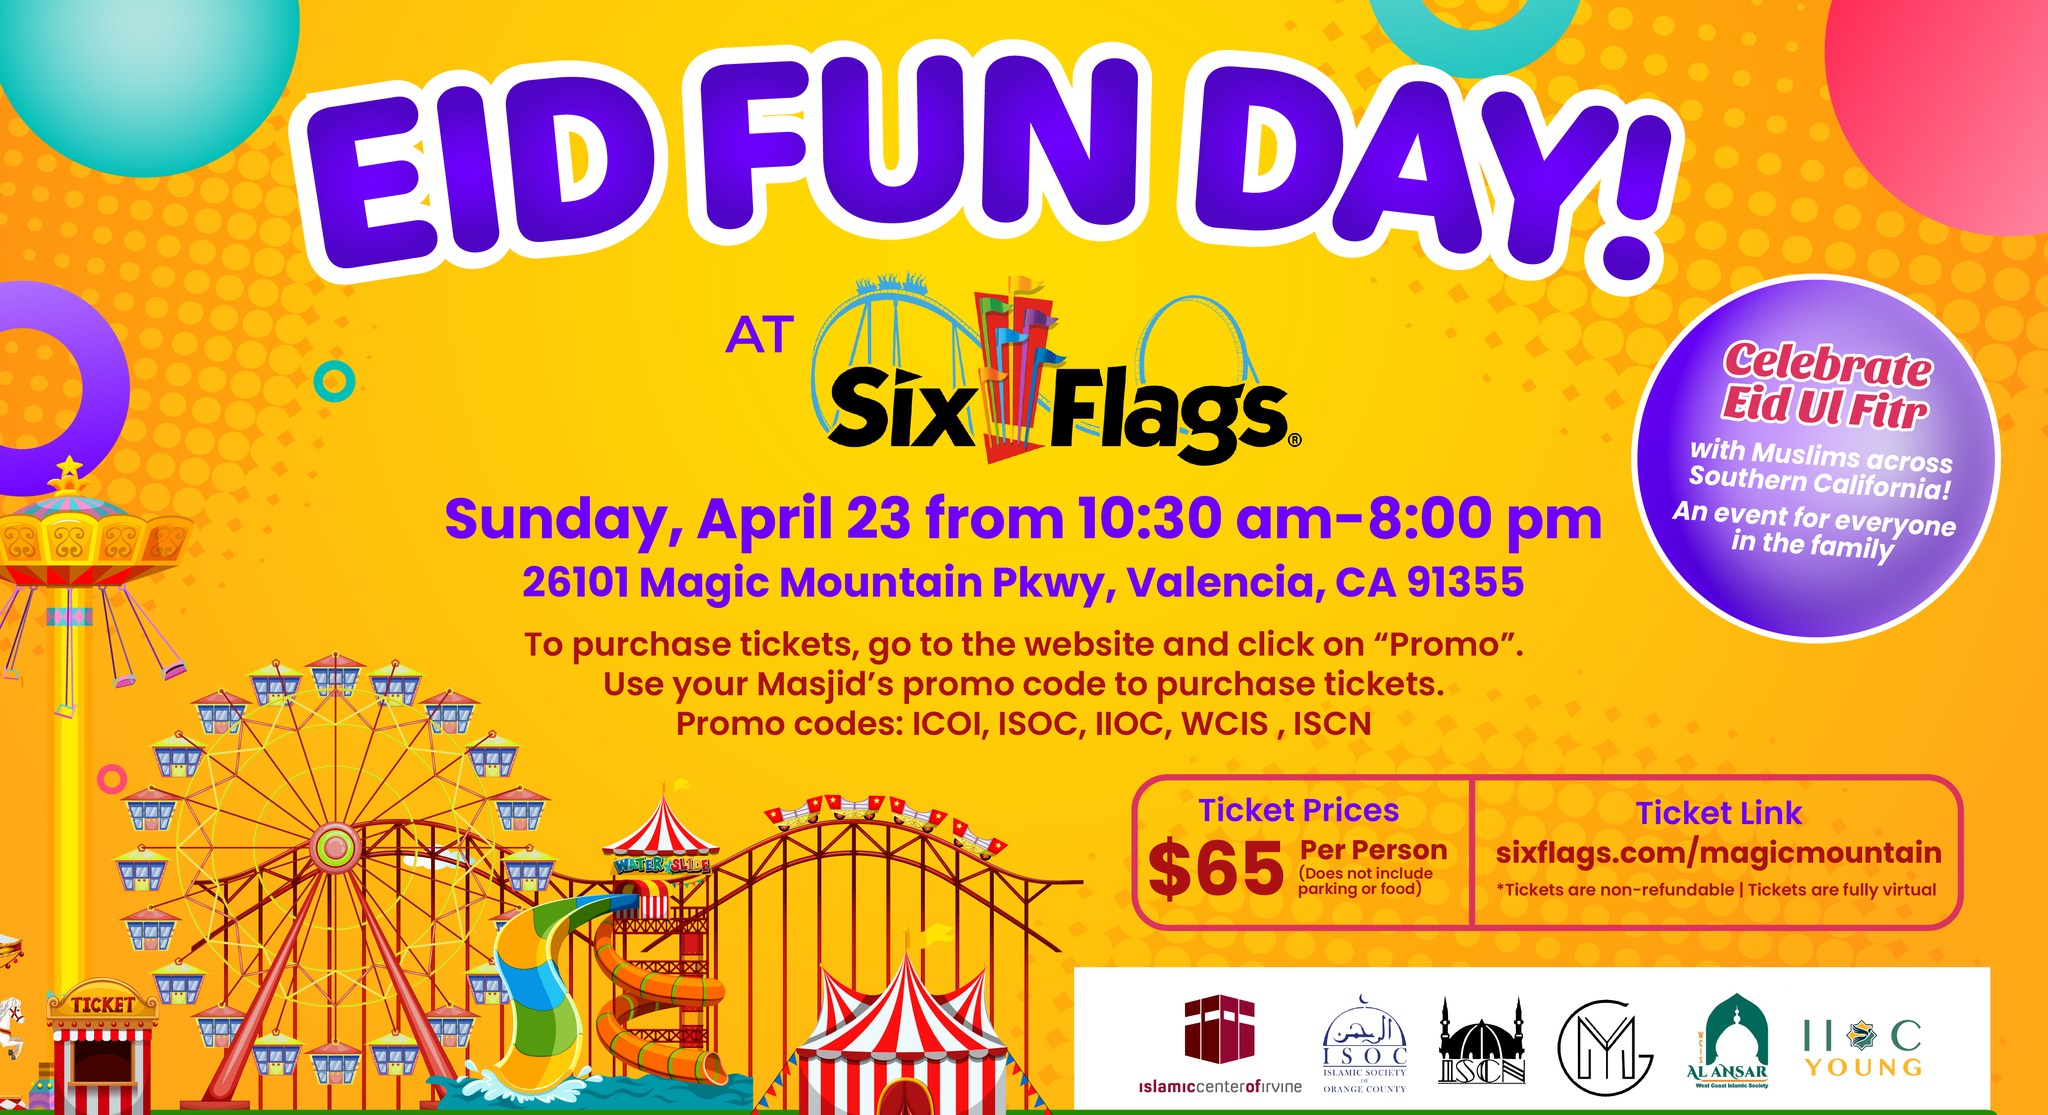 Eid Fun Day at Six Flags Shura Council